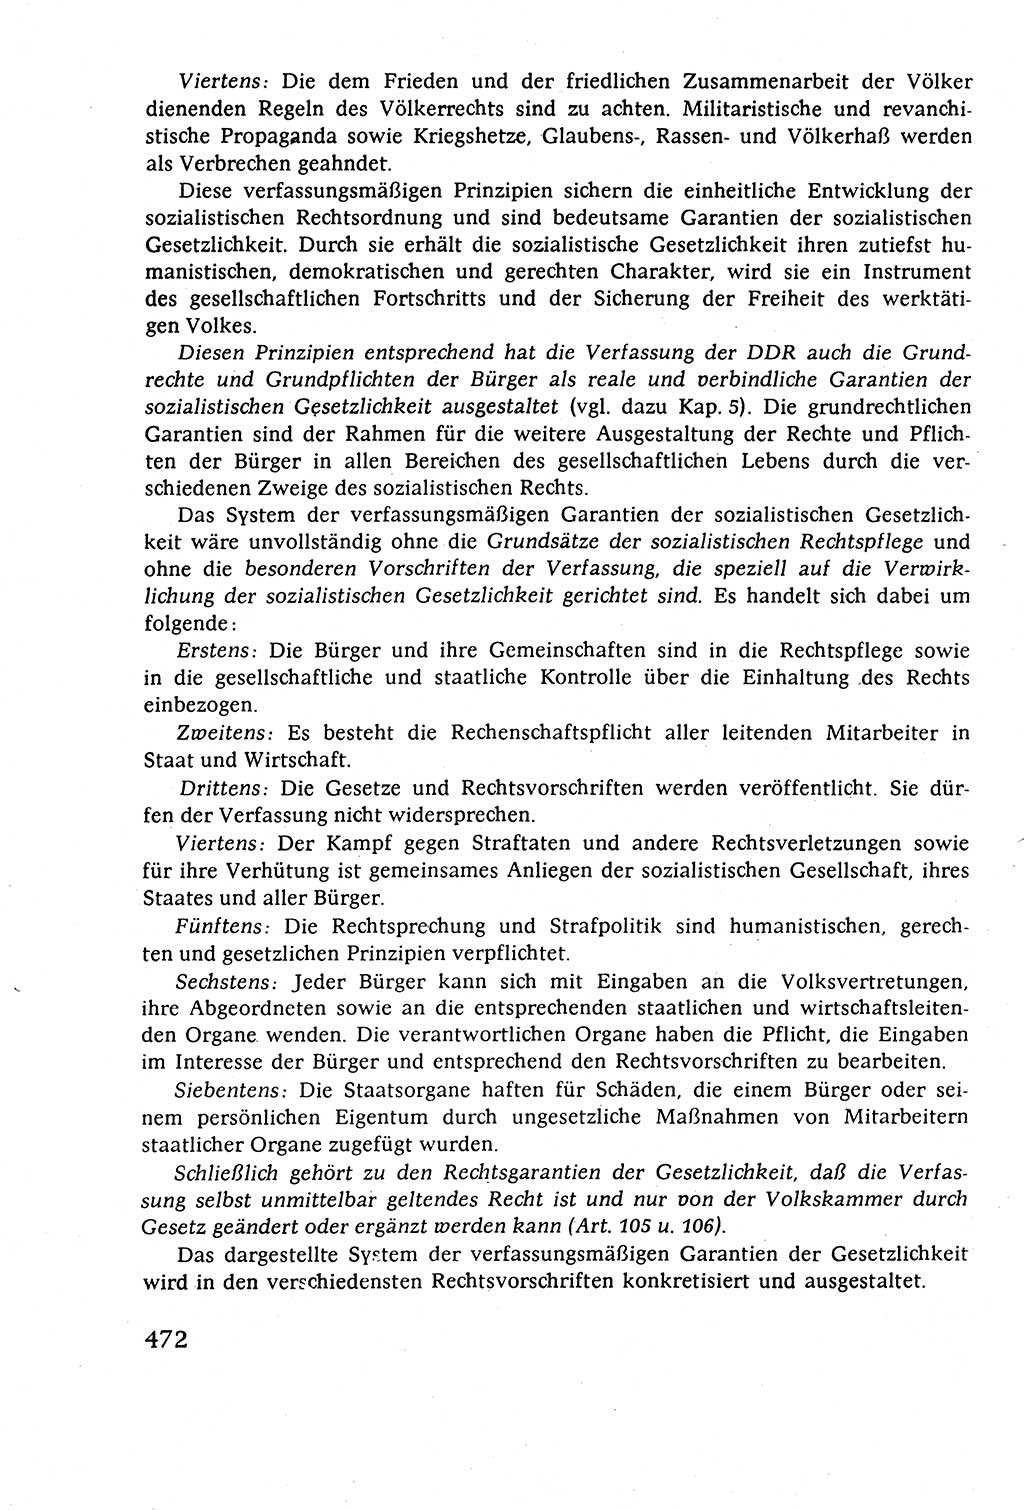 Staatsrecht der DDR (Deutsche Demokratische Republik), Lehrbuch 1977, Seite 472 (St.-R. DDR Lb. 1977, S. 472)